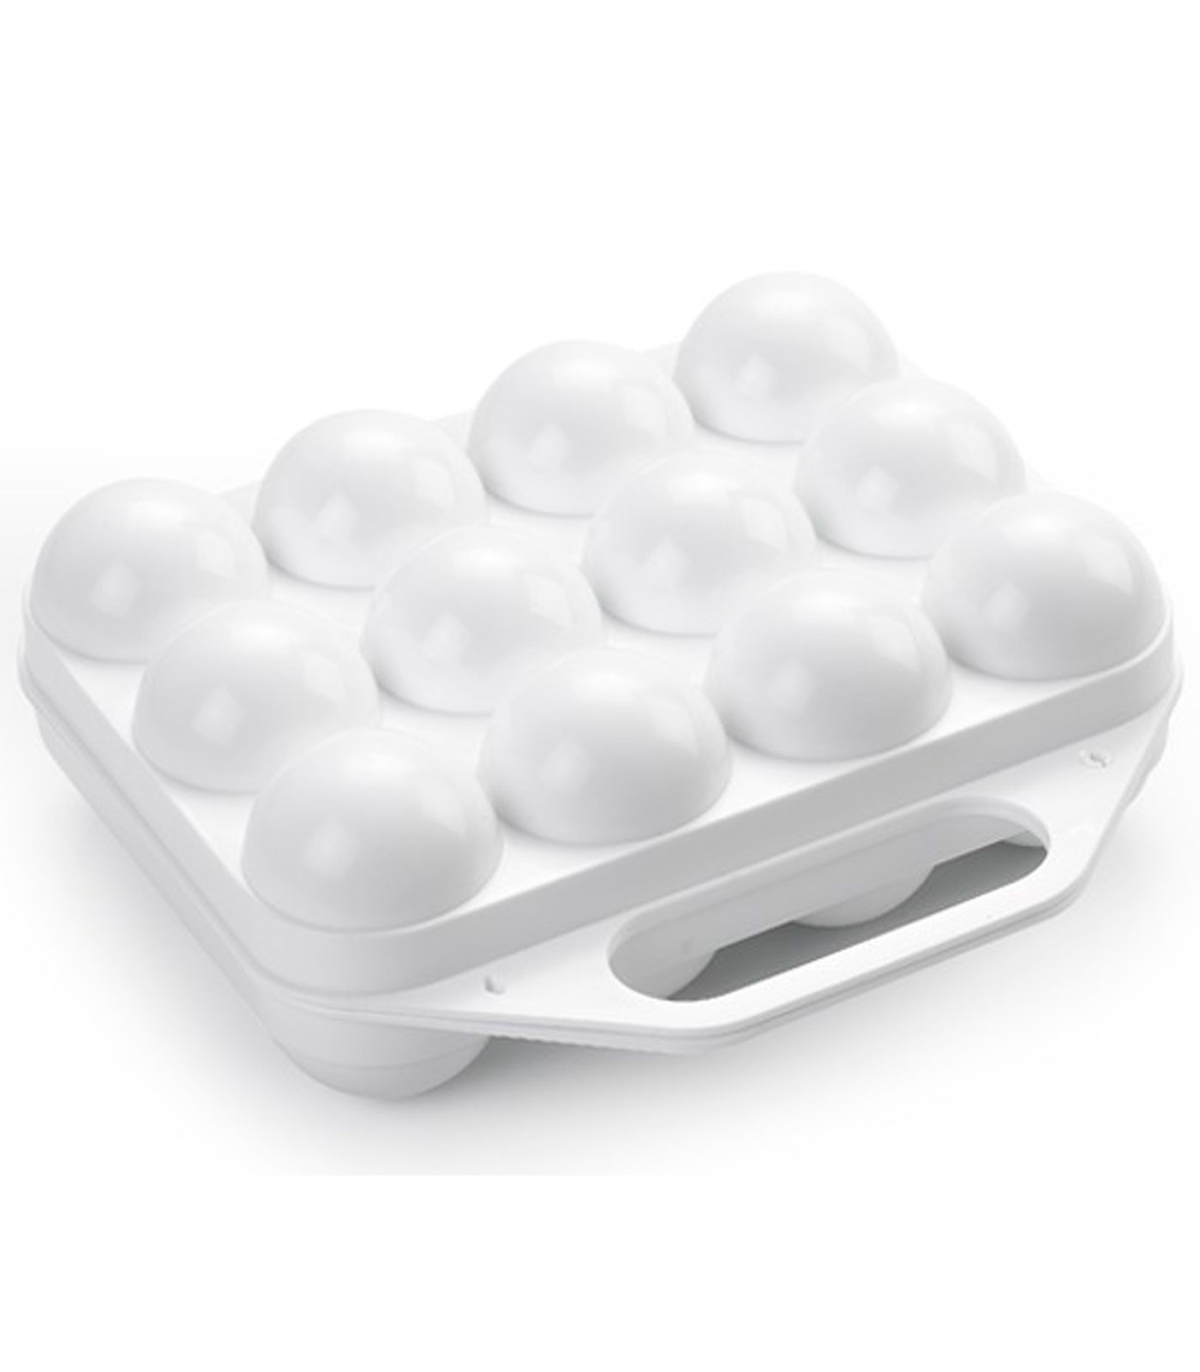 https://tradineur.com/101042-superlarge_default/tradineur--huevera-de-plastico-de-color-blanco-con-tapadera-para-huevos-12-espacios-para-huevos-cocina-resposteria-fabricada-en-.jpg